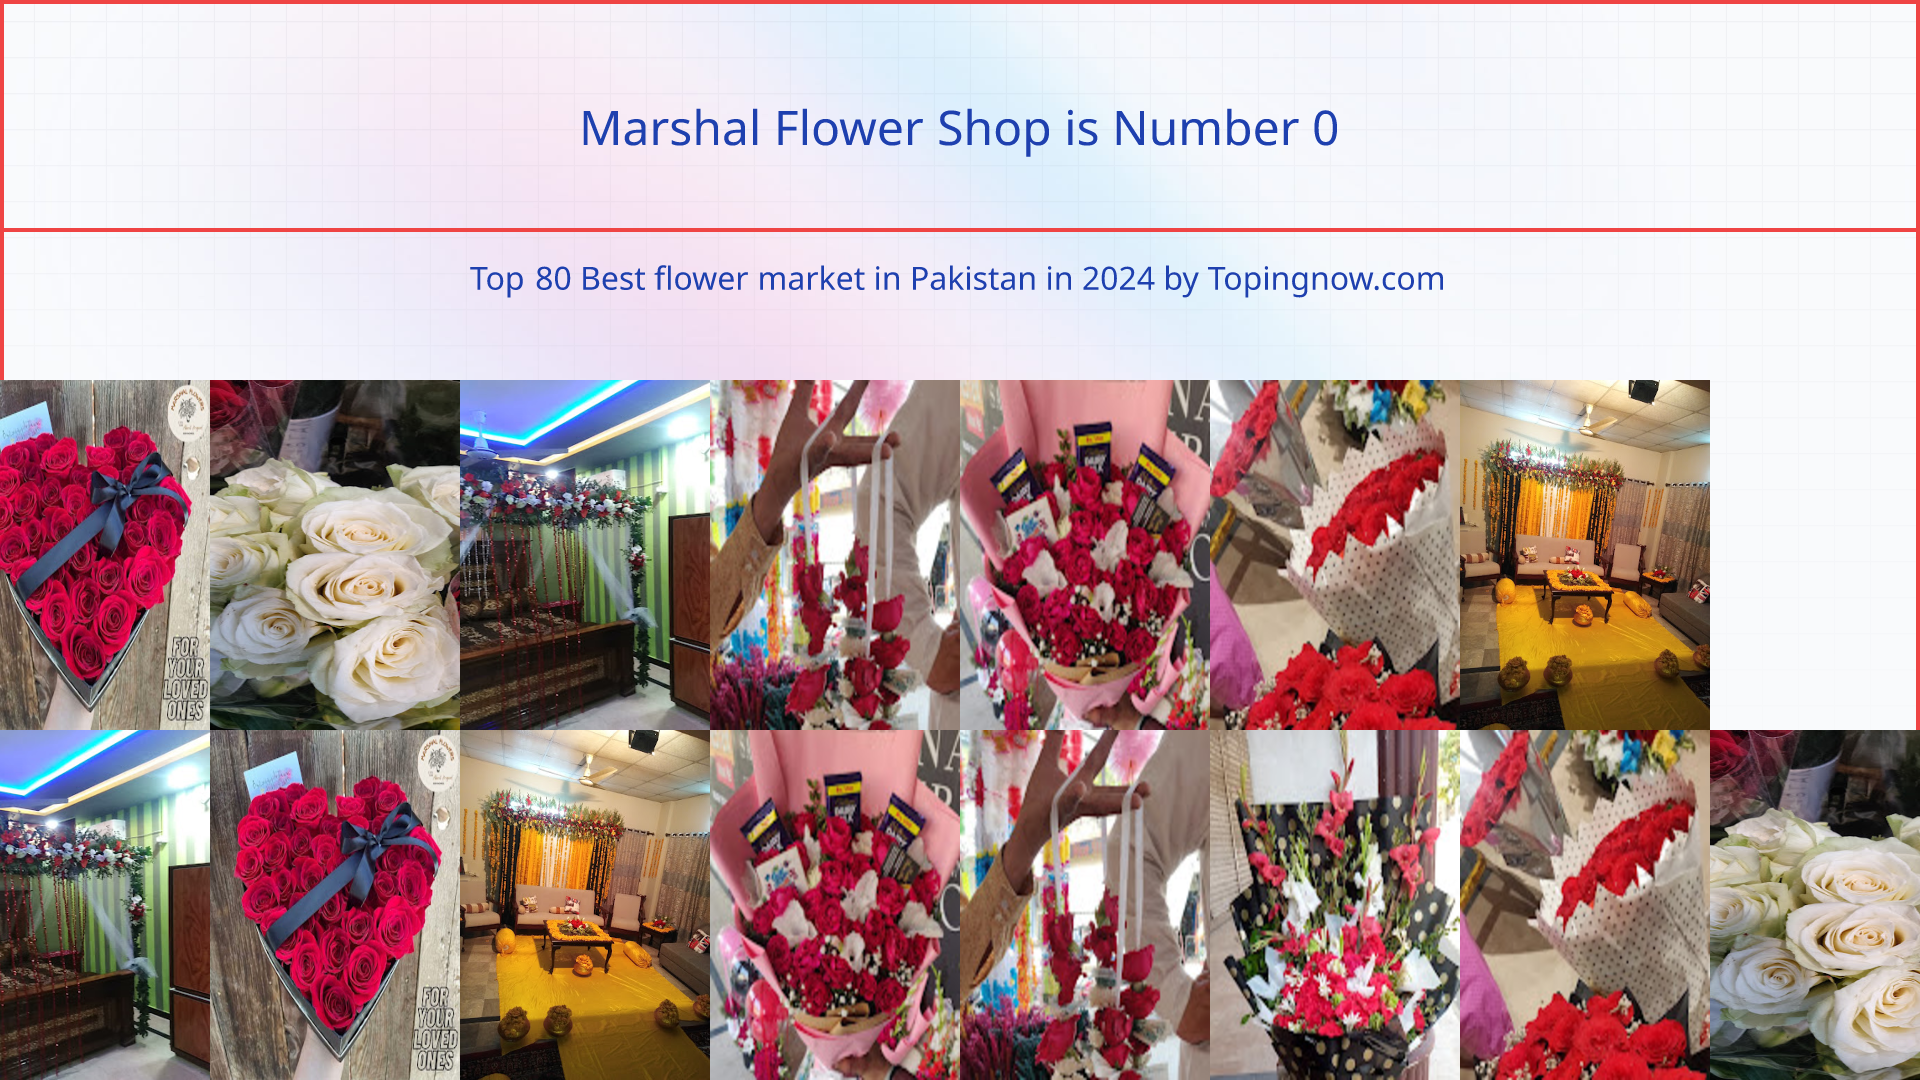 Marshal Flower Shop: Top 80 Best flower market in Pakistan in 2024